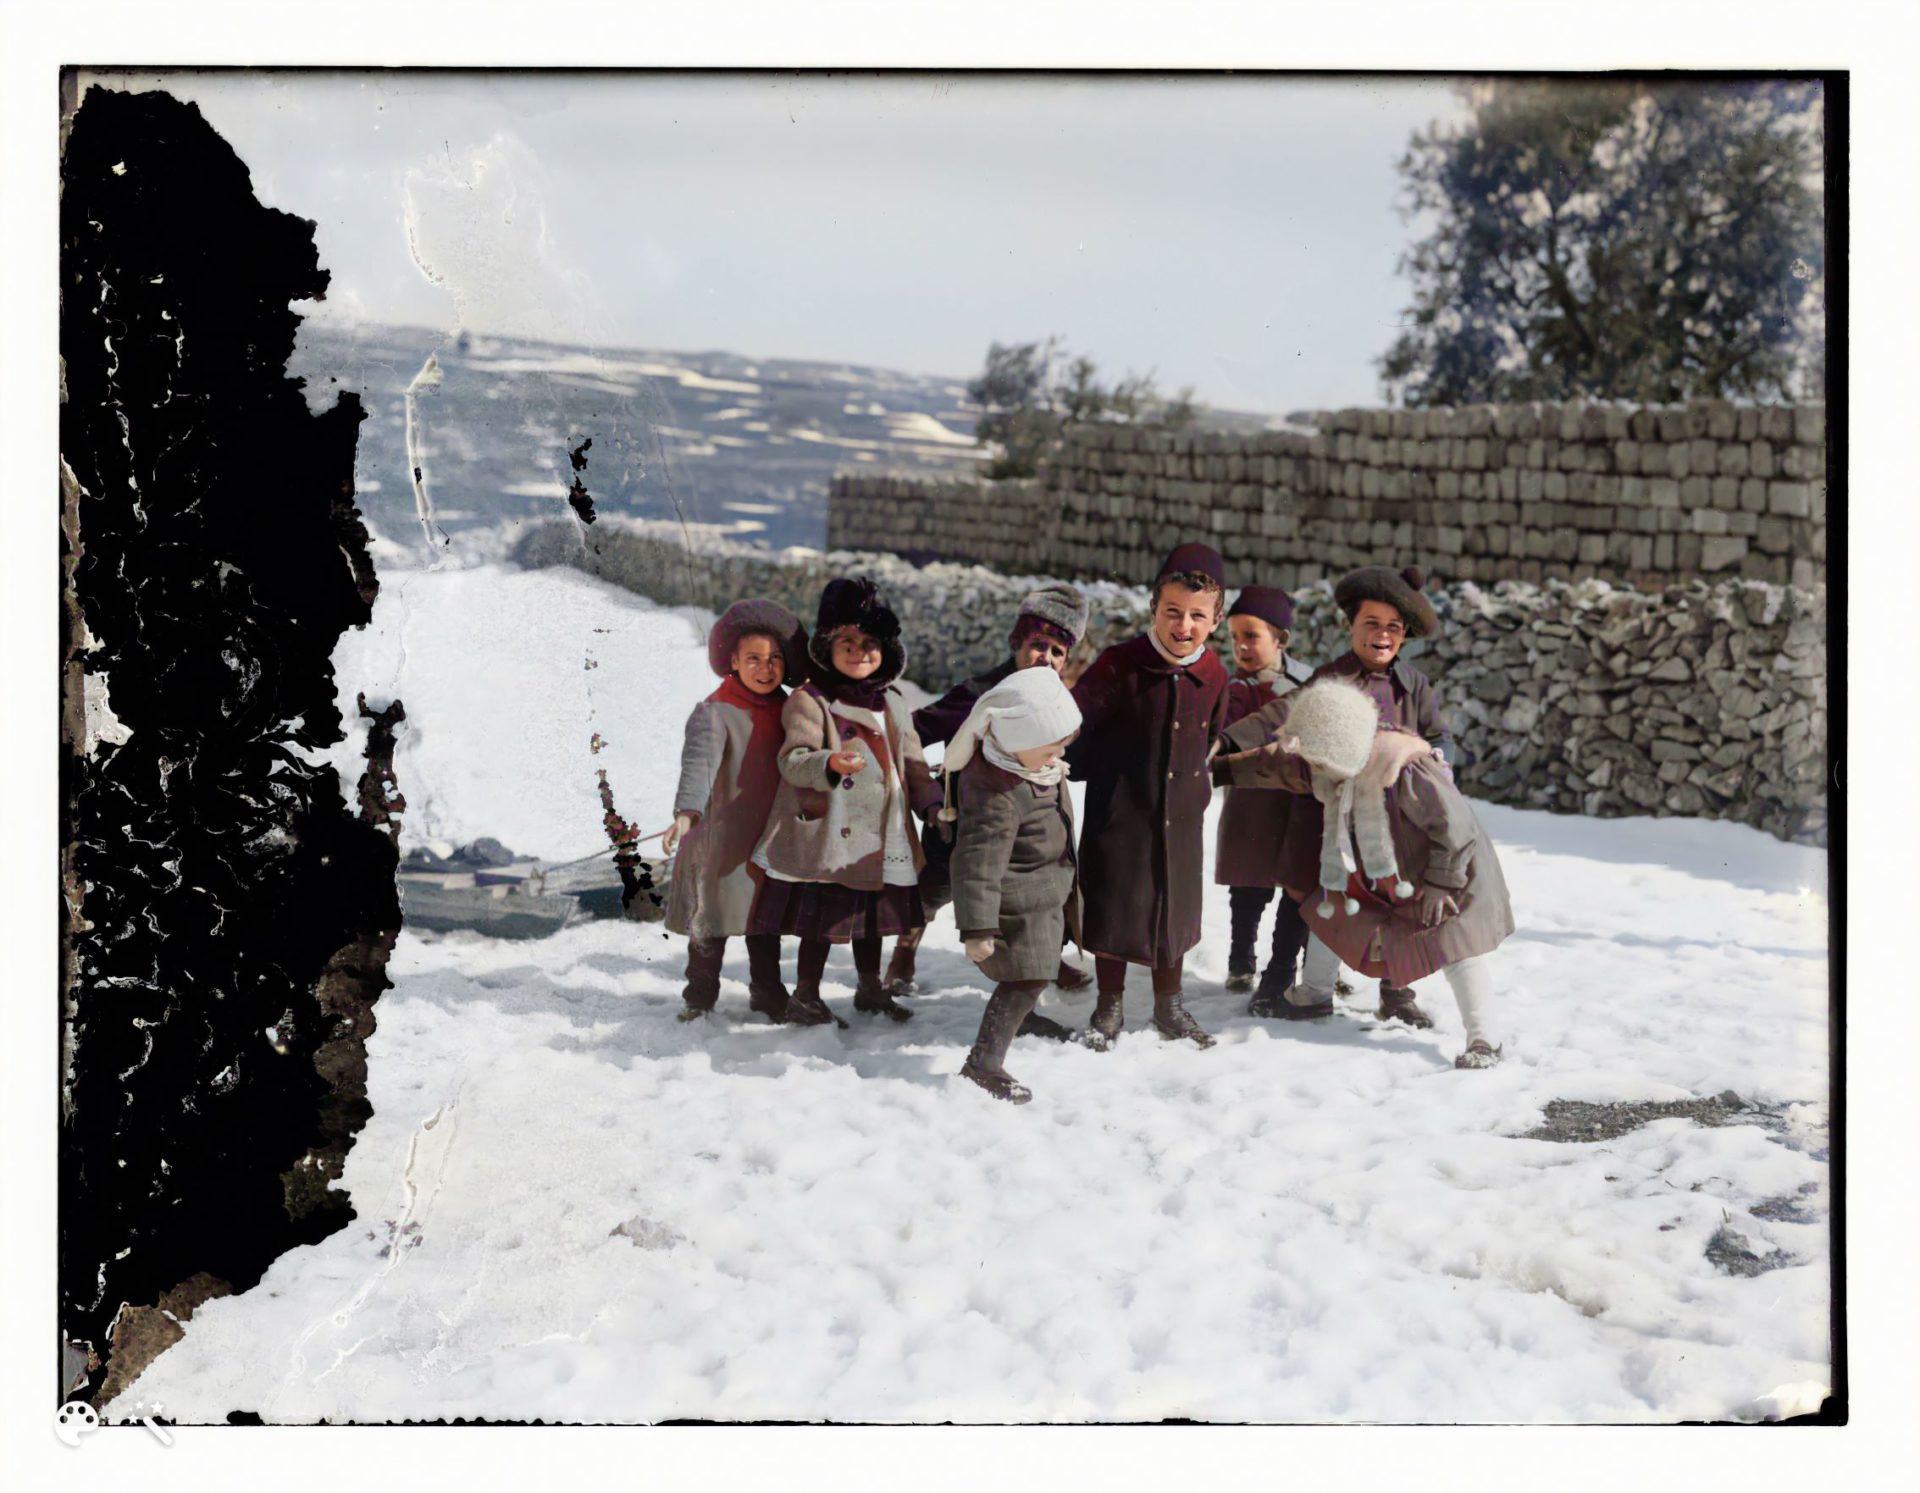 ילדים משחקים בשלג, ירושלים 1921. מספר תמונה: LC-DIG-matpc-11483